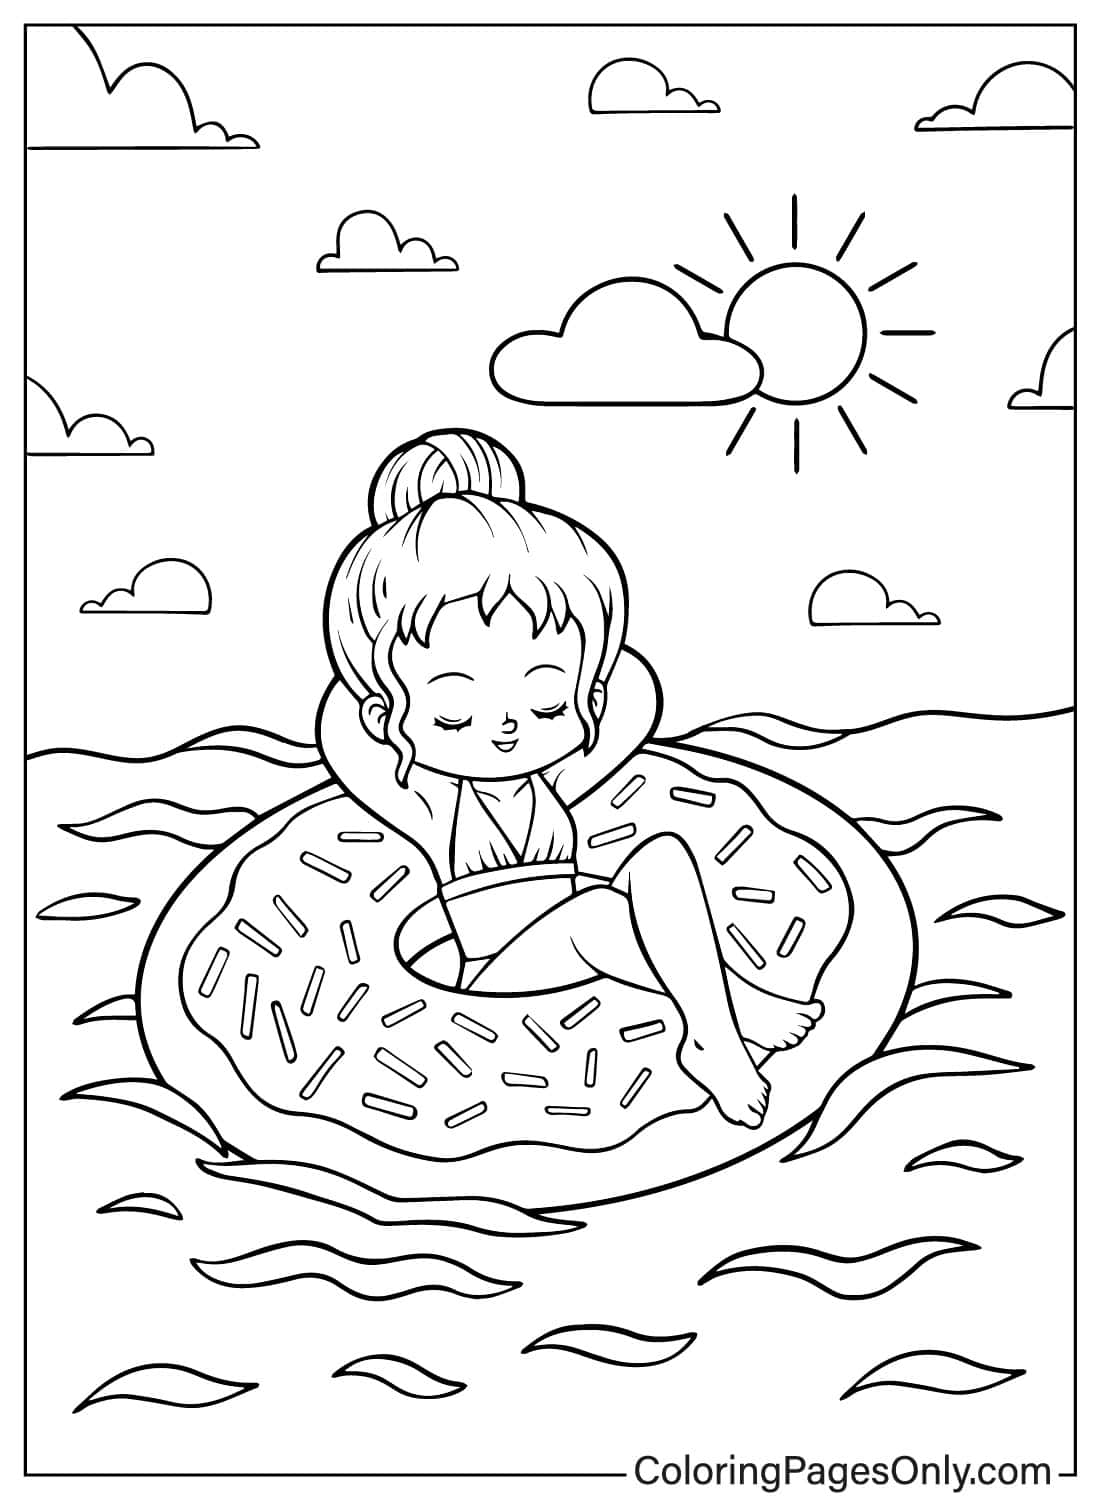 游泳时躺在水中漂浮物上的女孩